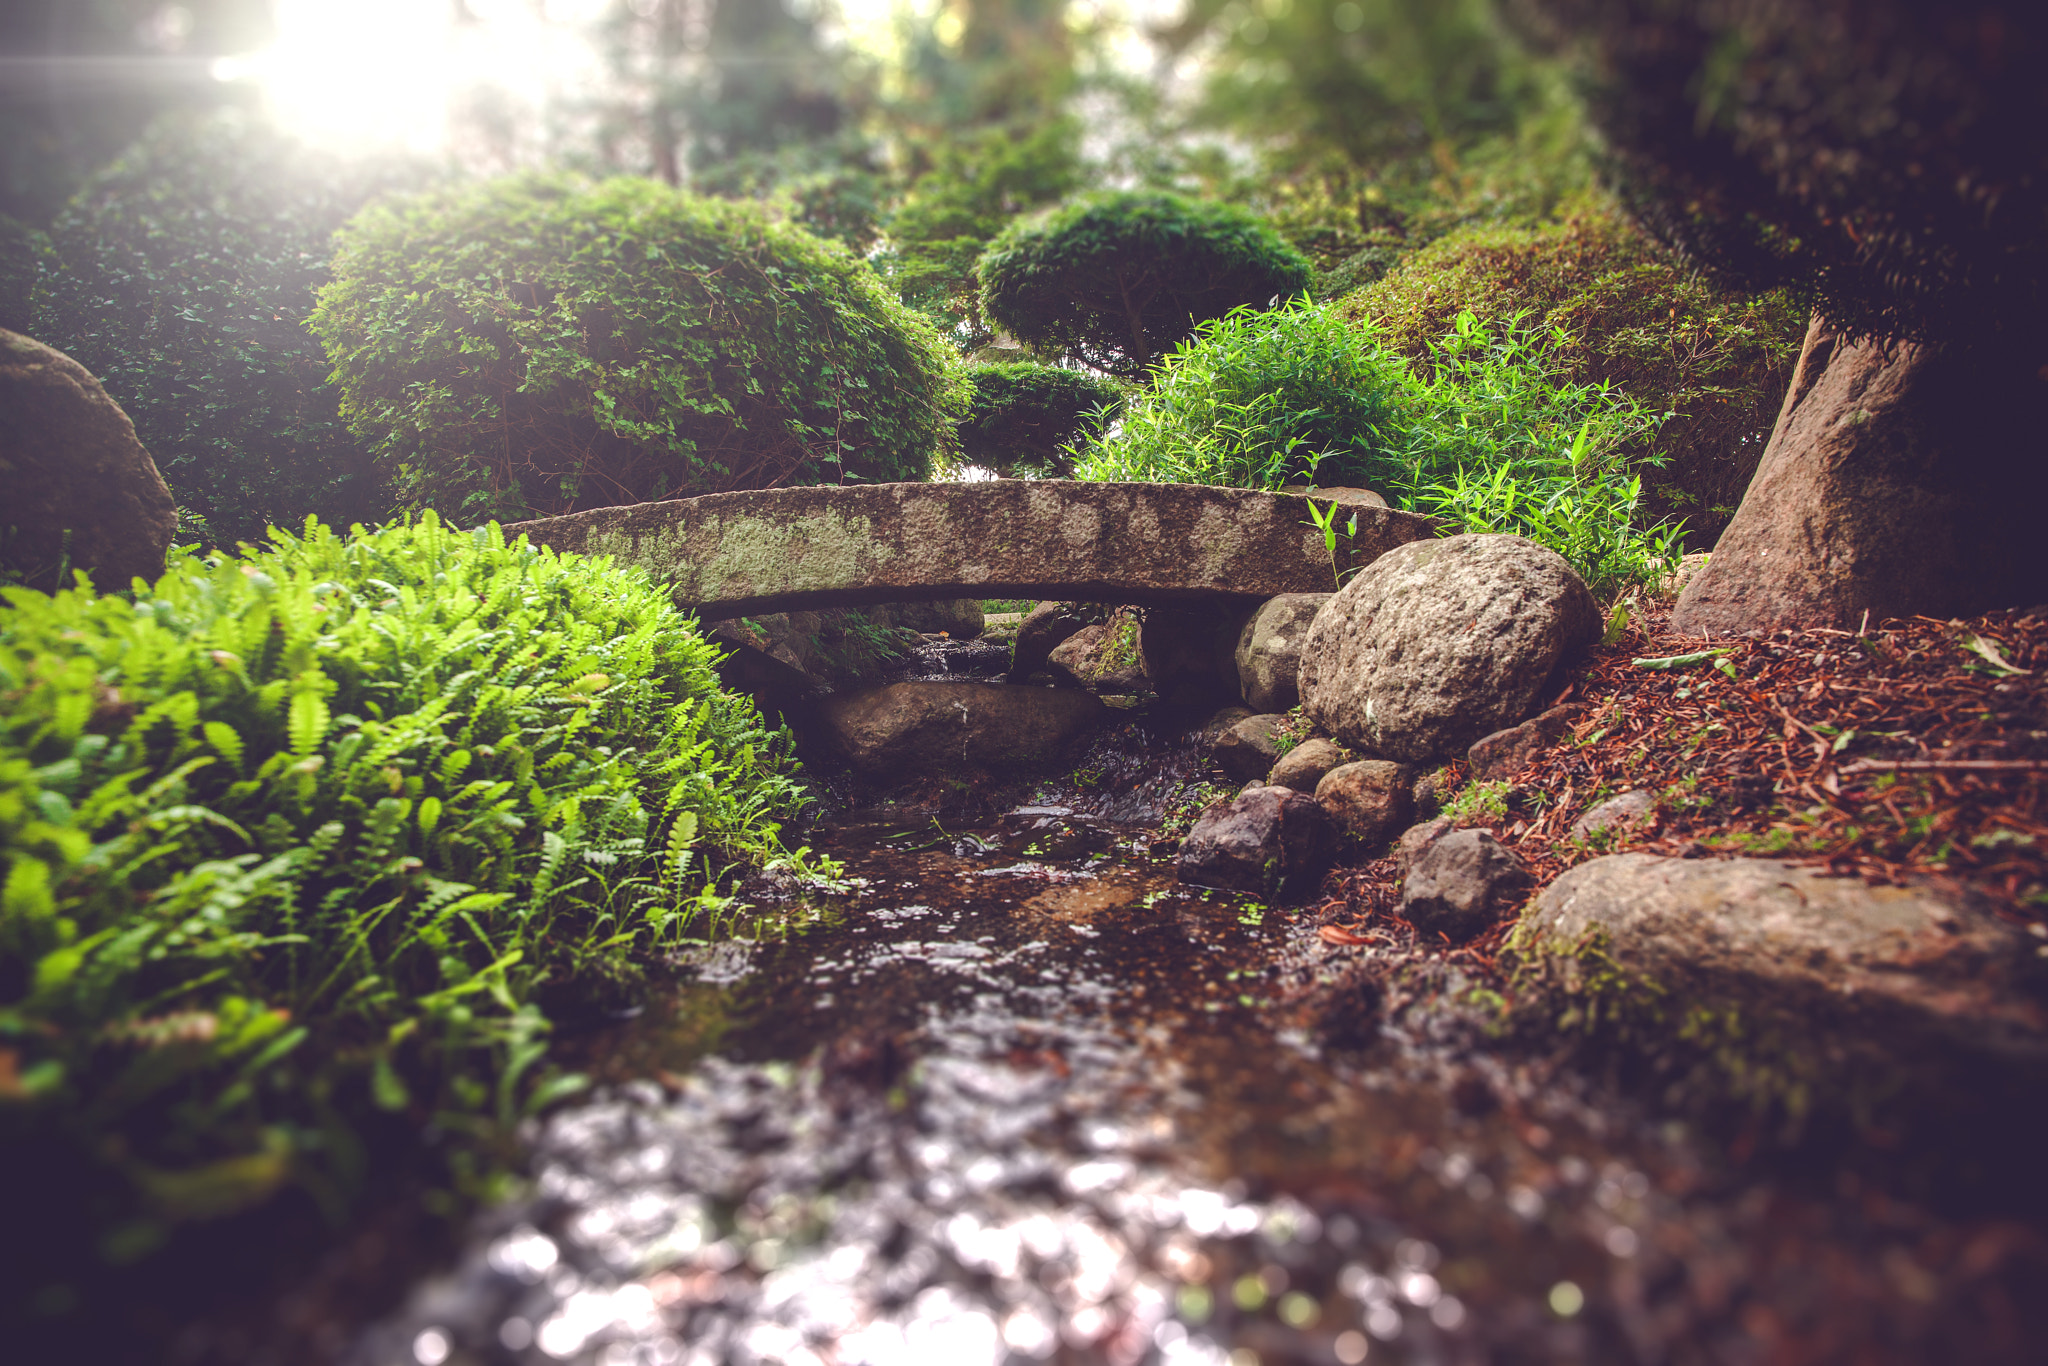 Sony Alpha DSLR-A900 sample photo. Smale stone bridge in a spiritual garden photography